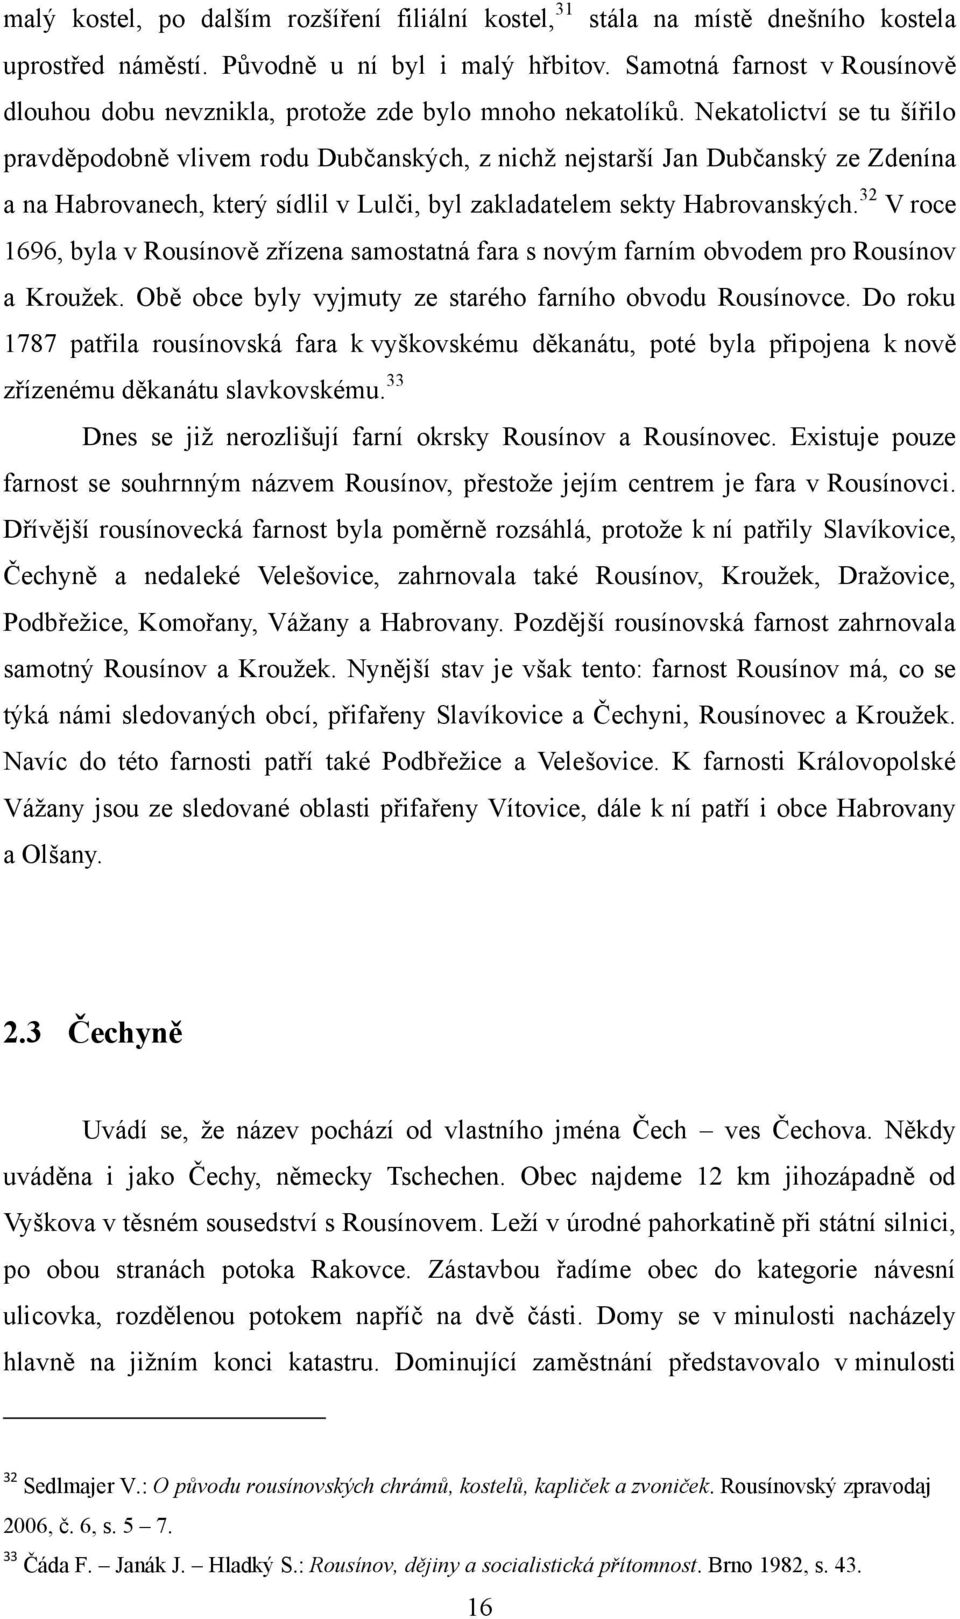 Nekatolictví se tu šířilo pravděpodobně vlivem rodu Dubčanských, z nichţ nejstarší Jan Dubčanský ze Zdenína a na Habrovanech, který sídlil v Lulči, byl zakladatelem sekty Habrovanských.